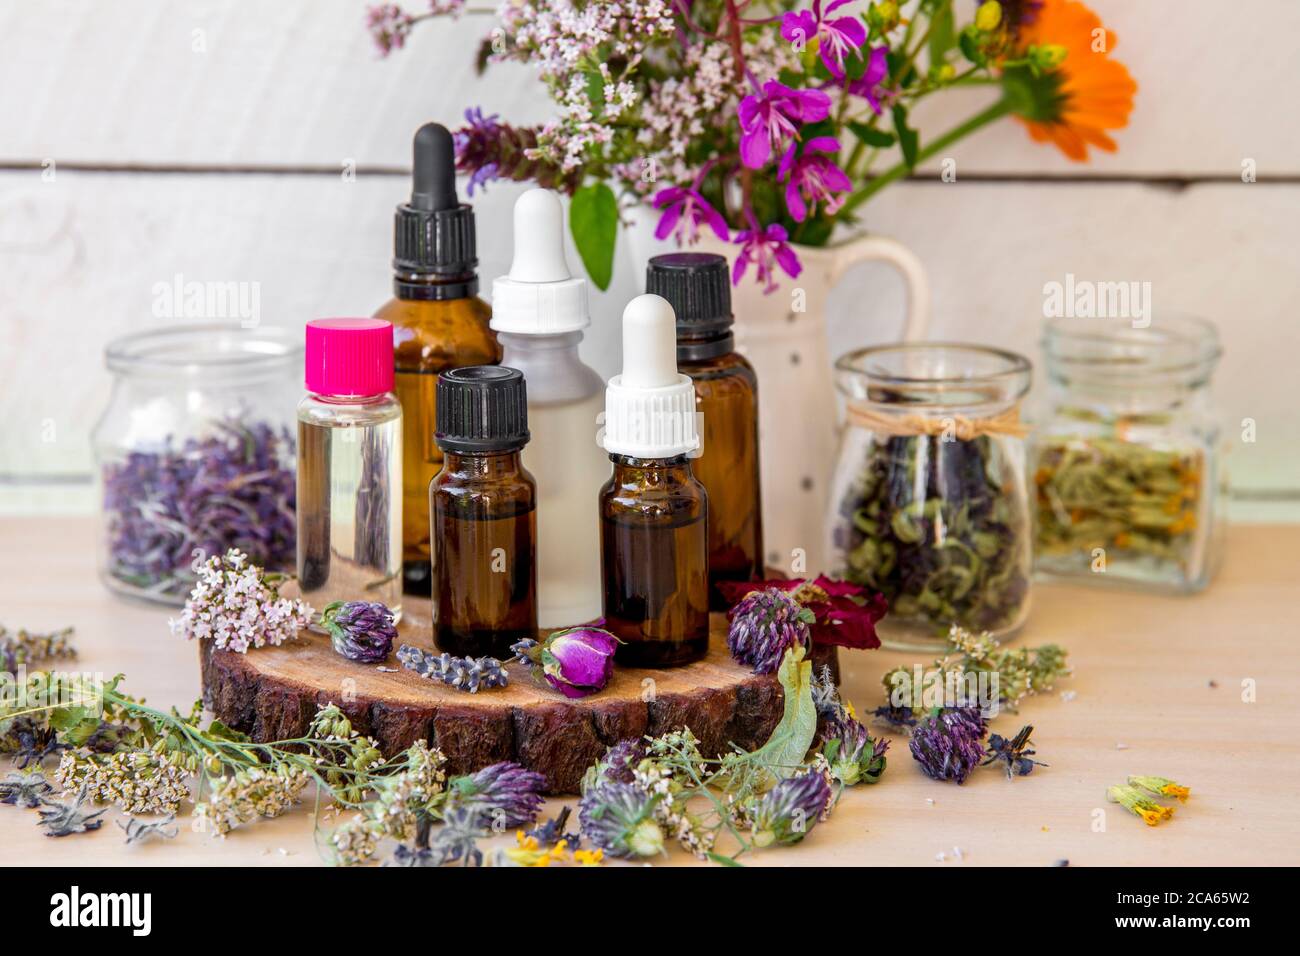 Viele verschiedene aromatische Ölflaschen auf dem Tisch, dekoriert mit wilden getrockneten Blumen und Pflanzen. Lifestyle-Komposition. Stockfoto